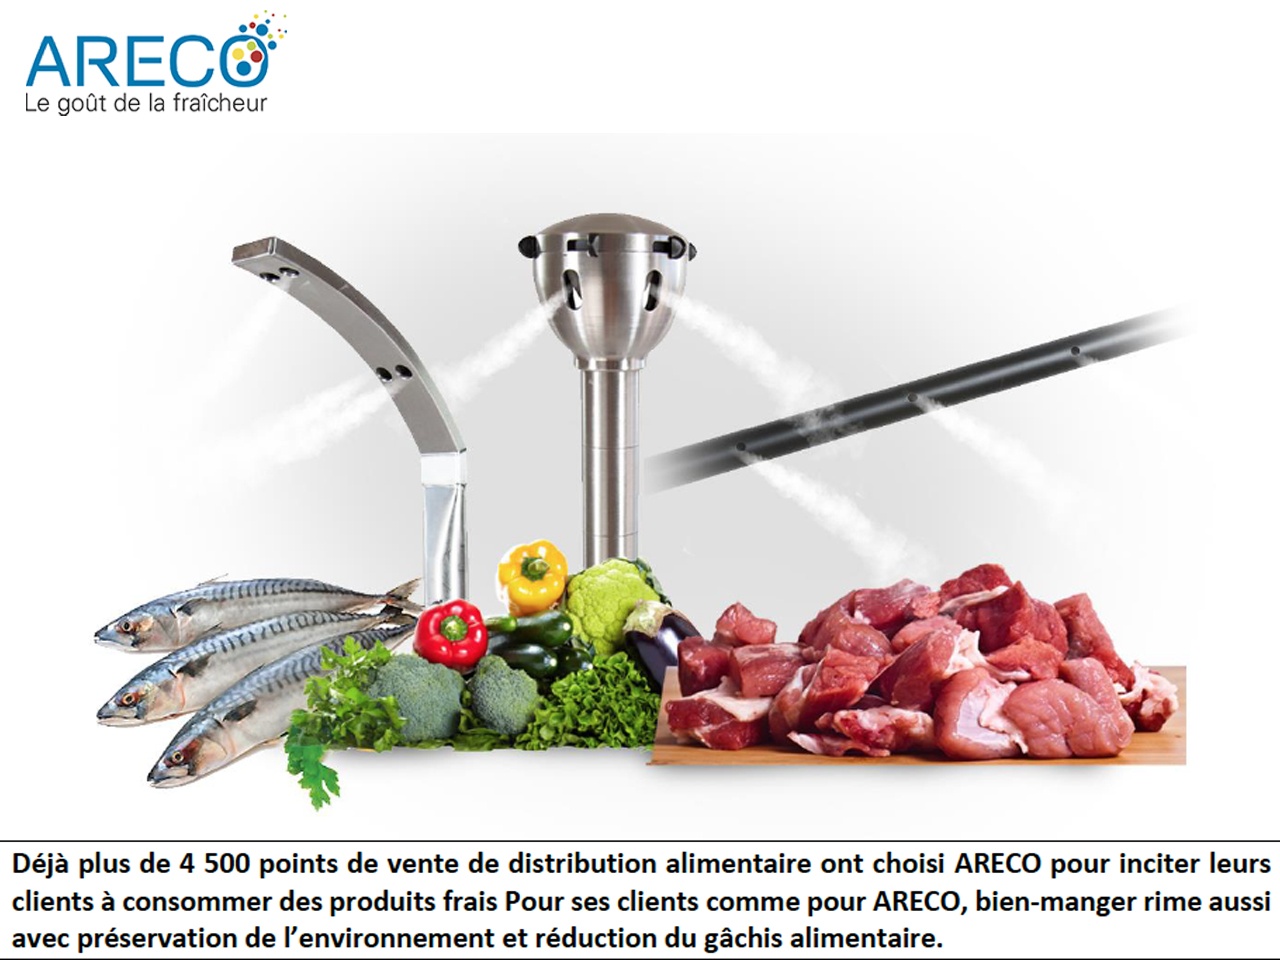 Areco, la foodtech au service du « mieux-manger », passe à  la vitesse supérieure